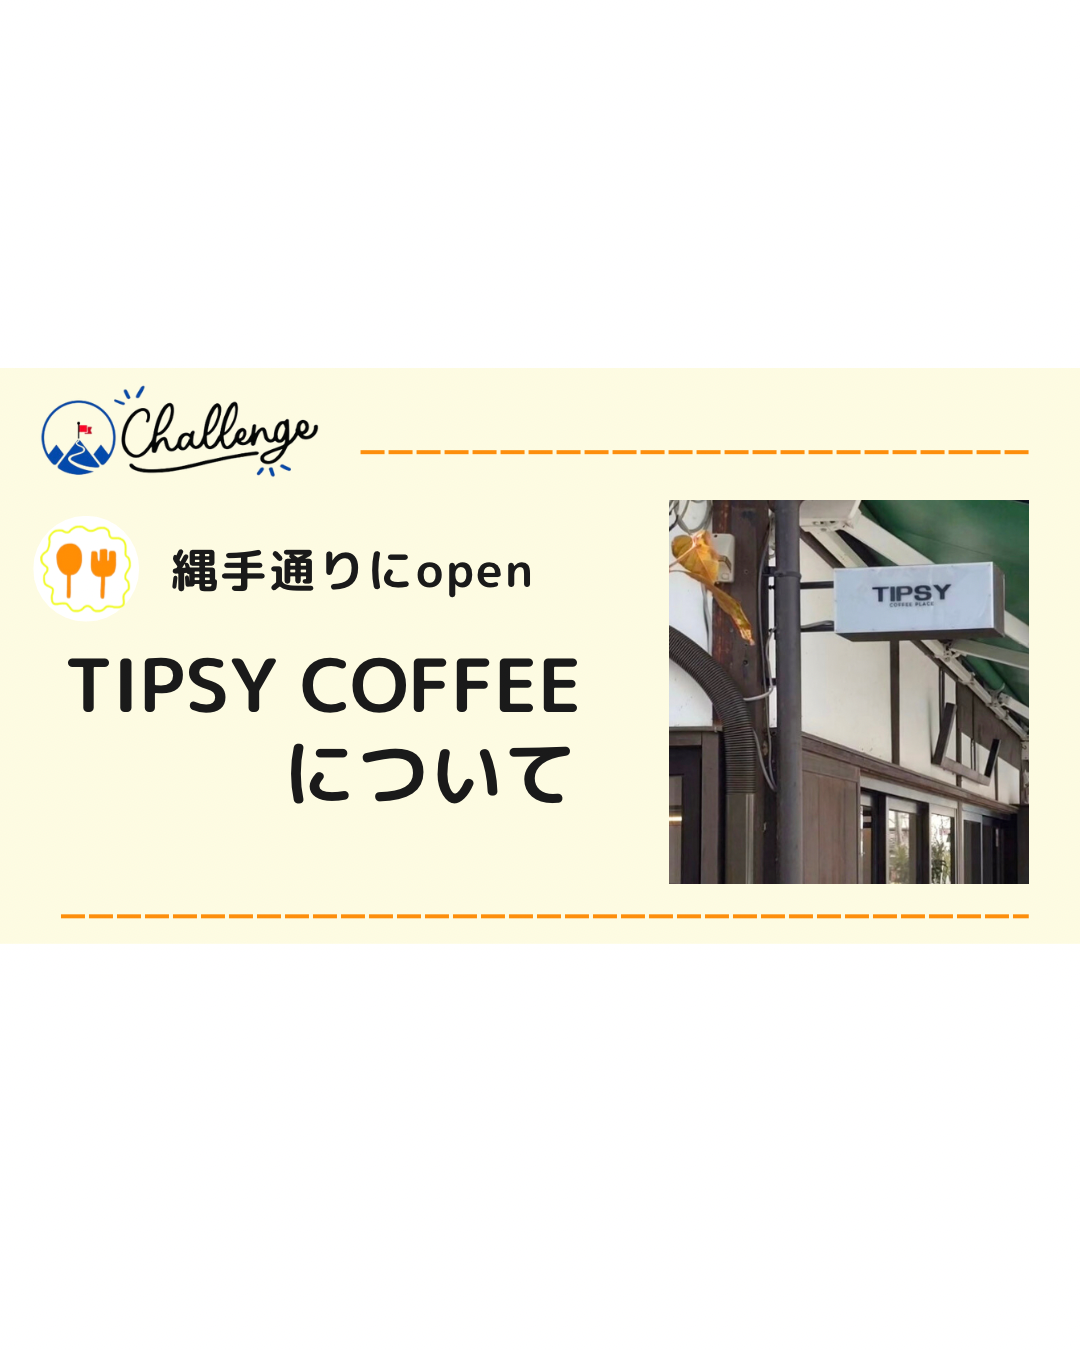 【11月28日Open】TIPSY COFFEE PLACE ナワテ通り商店街のオシャレなカフェ